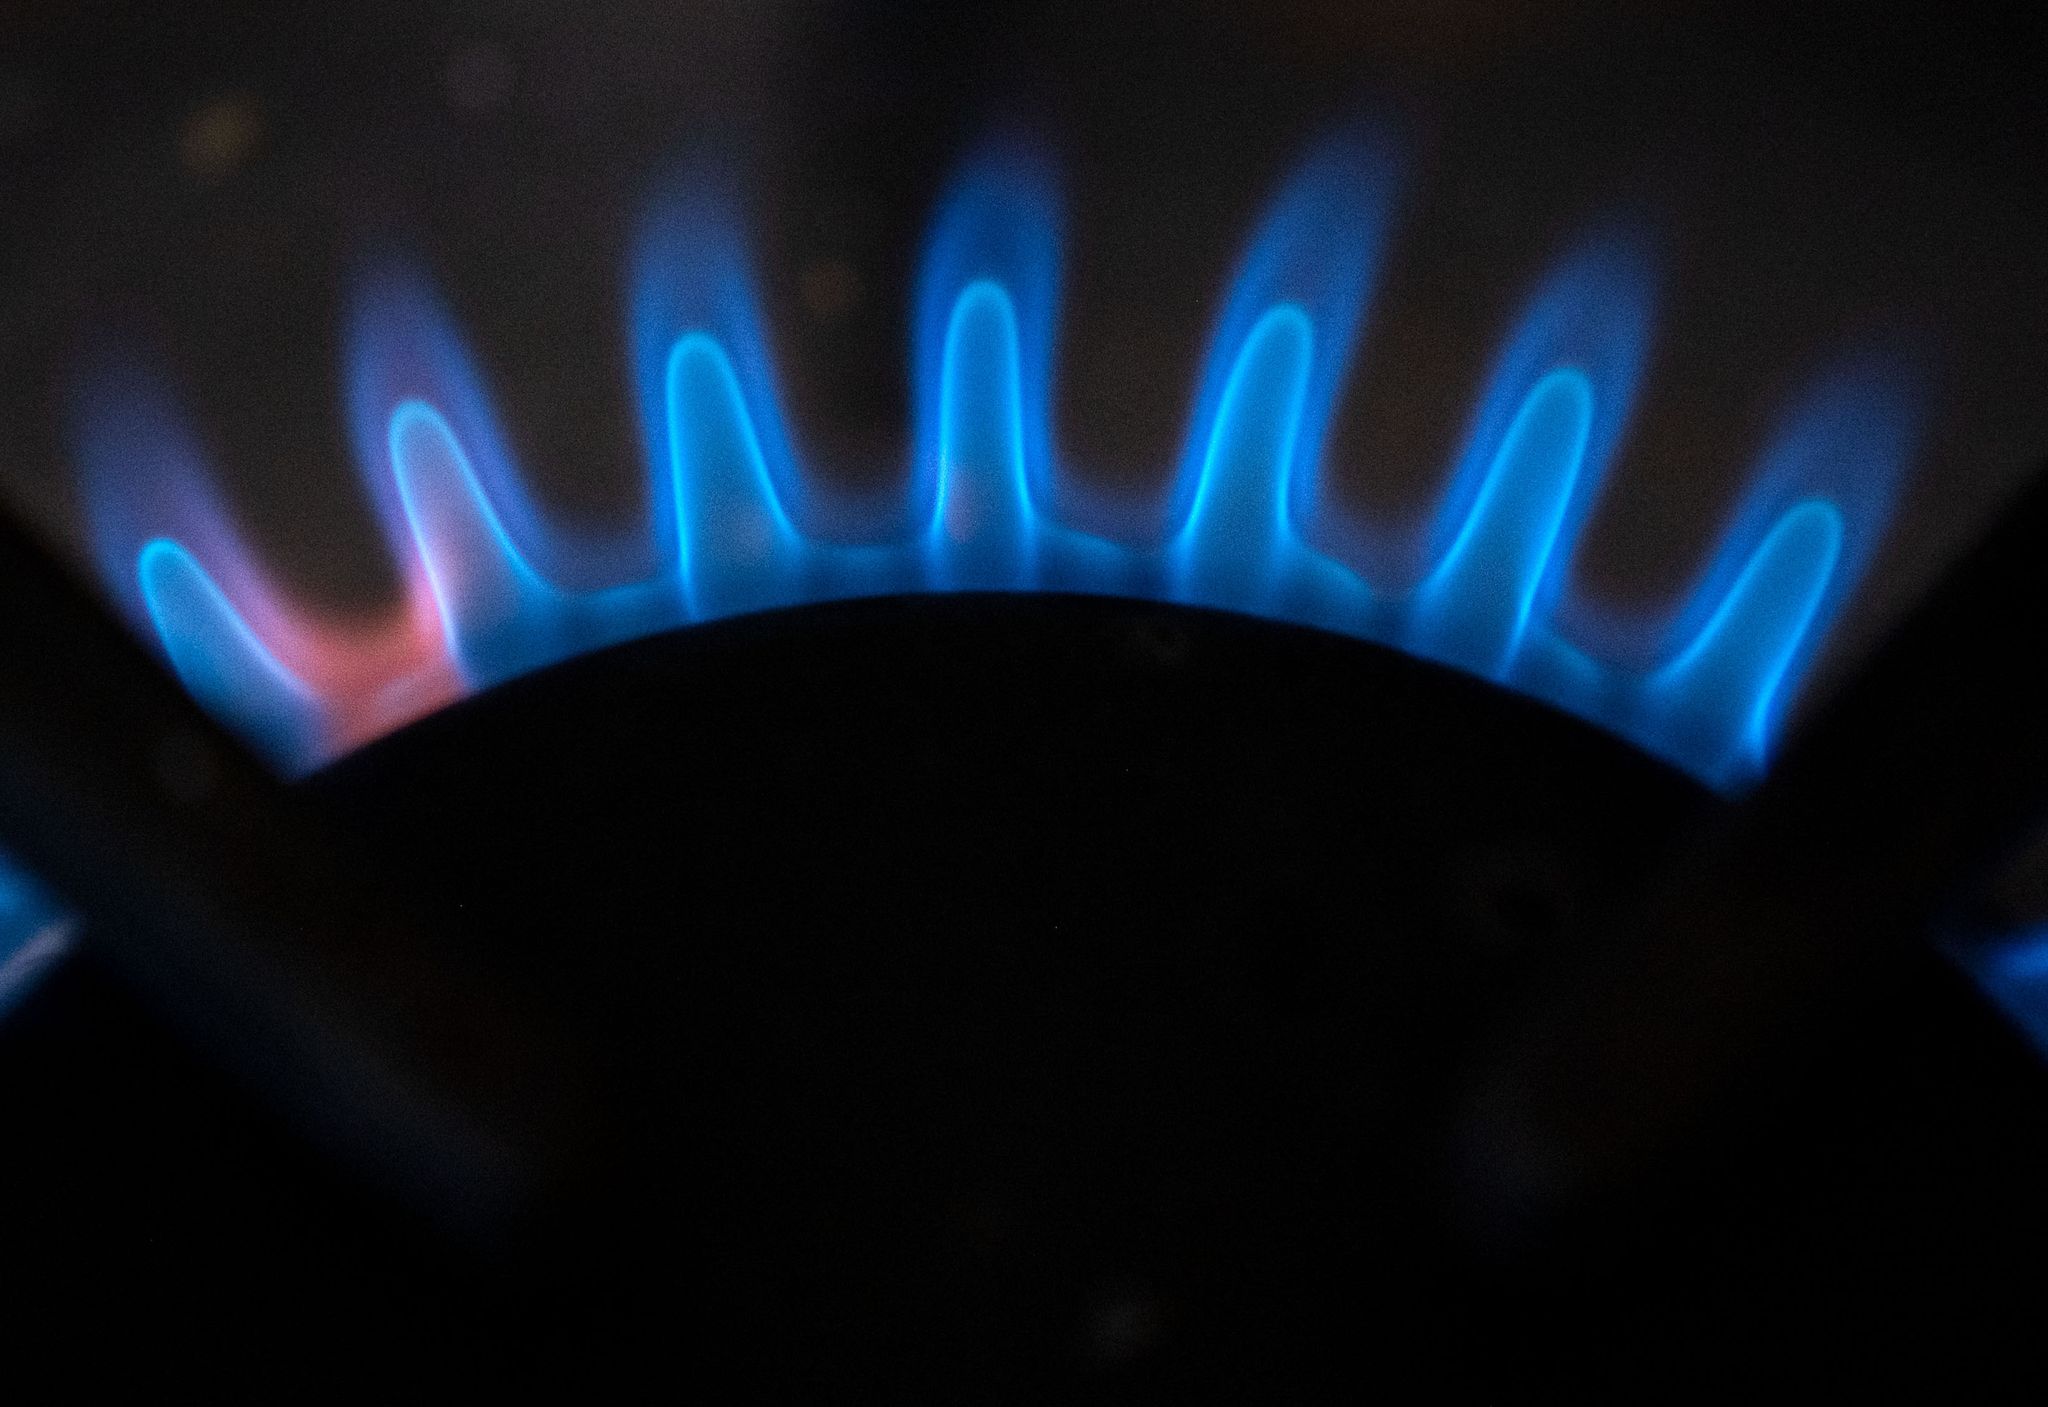 Zur Entlastung der Gas-Kunden will die Bundesregierung die Mehrwertsteuer auf Erdgas auf 7 Prozent senken. Laut YouGov-Umfrage wollen die meisten Verbraucher dennoch Gas einsparen.